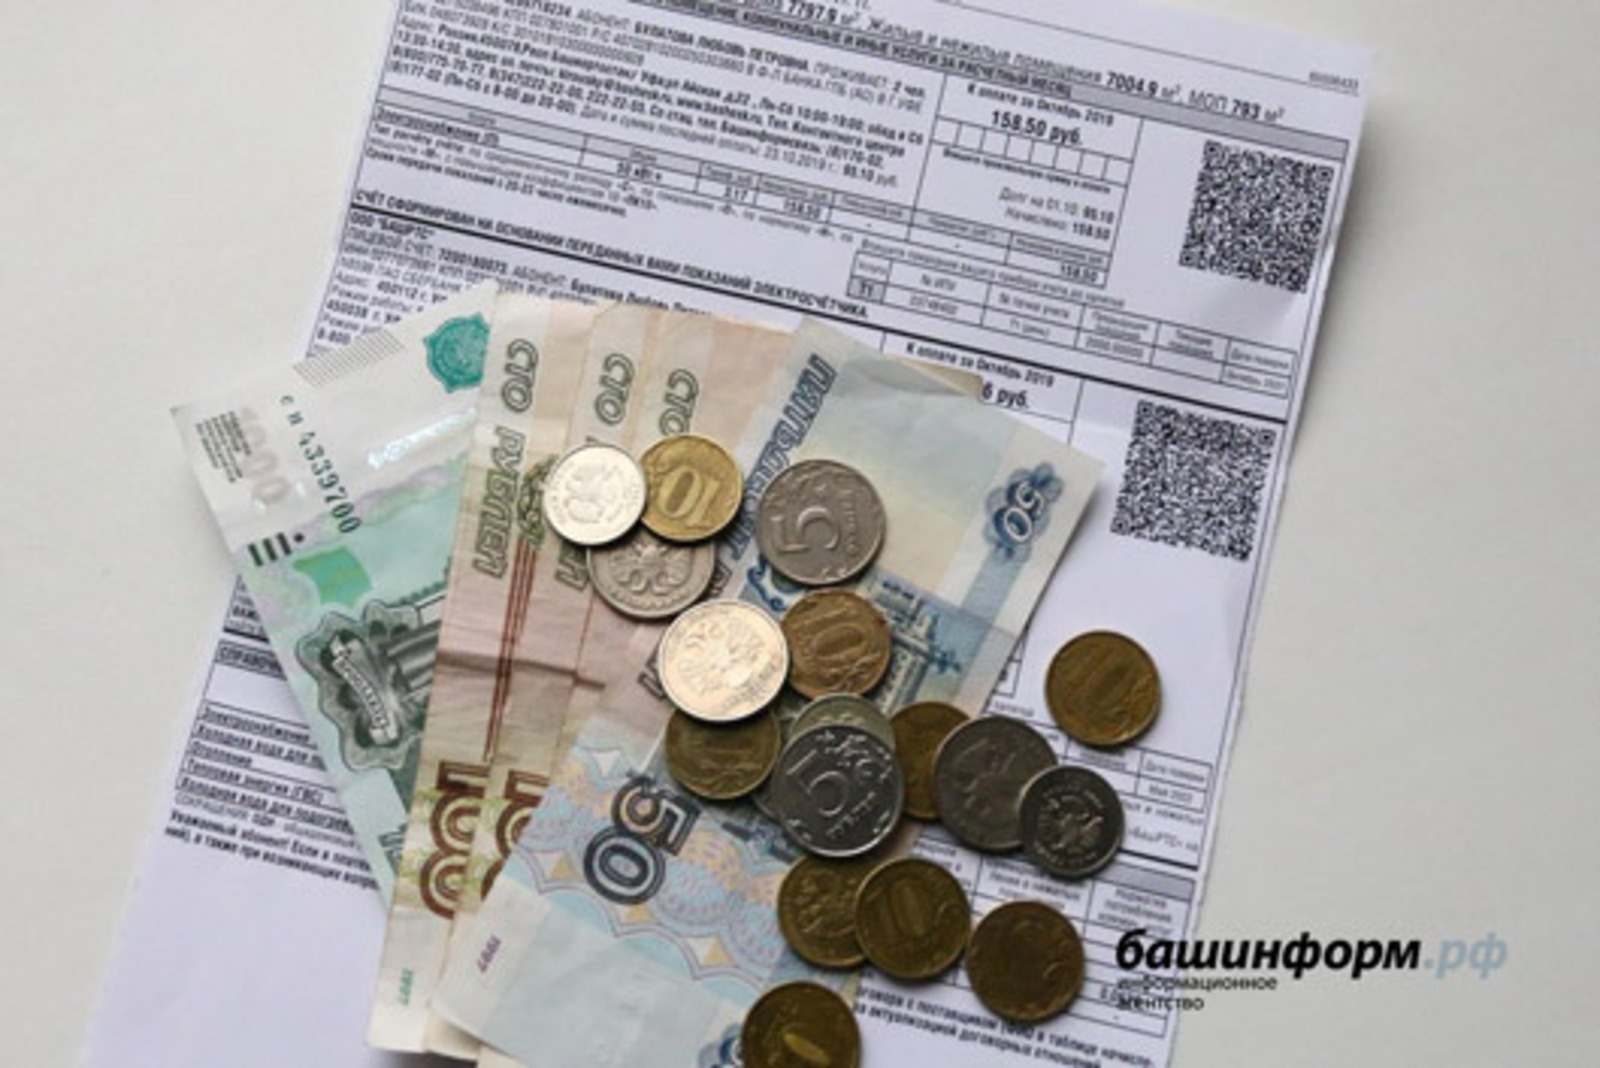 В апреле жители МКД Башкирии получат новый расчет за обслуживание общедомового имущества